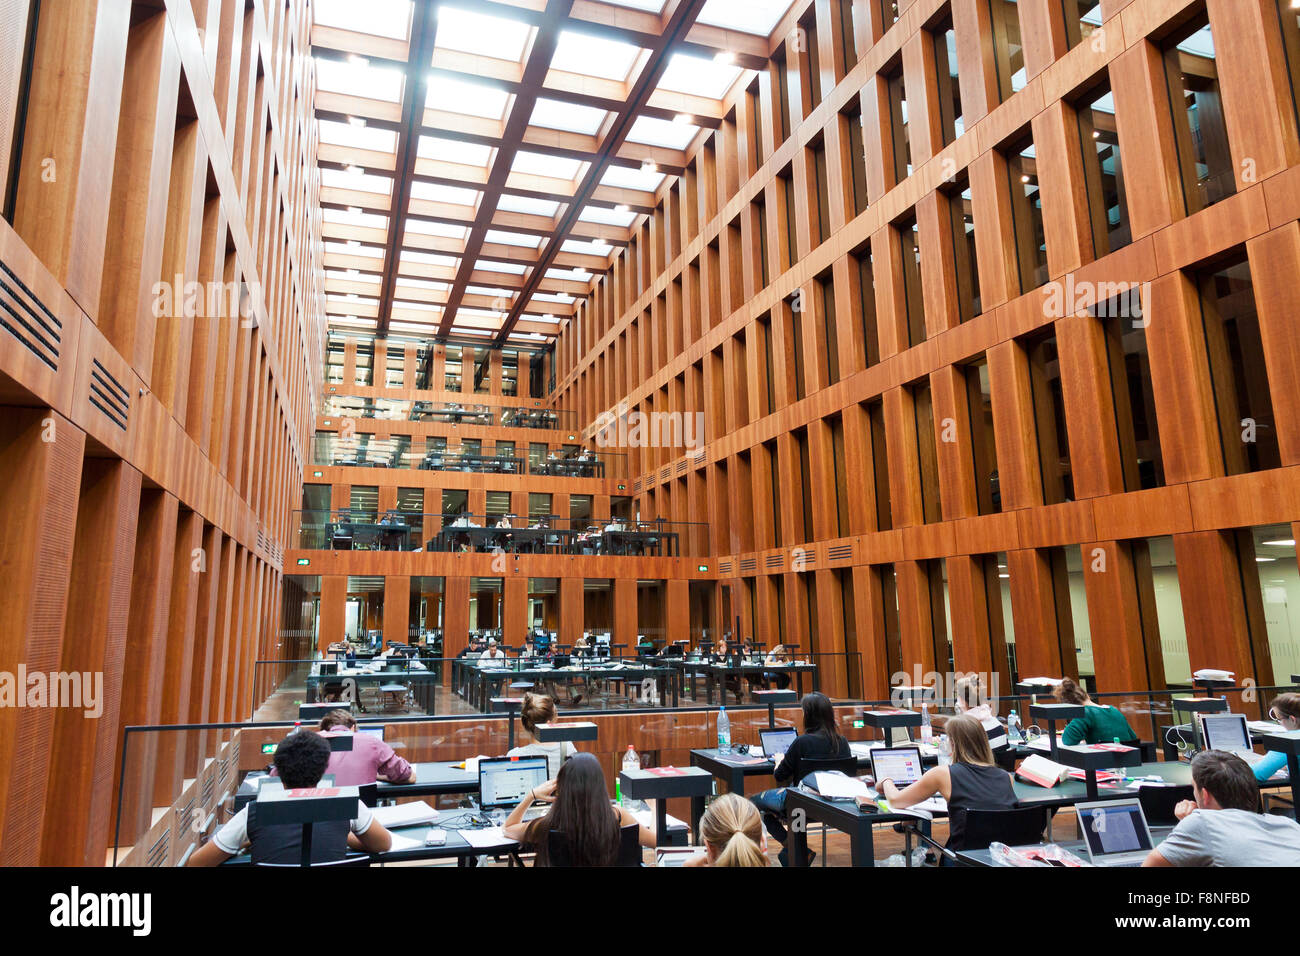 Berlino, Germania - luglio 1, 2014: Humboldt University Library in Berlino. Si tratta di uno dei più avanzati di biblioteche scientifiche in Germania Foto Stock